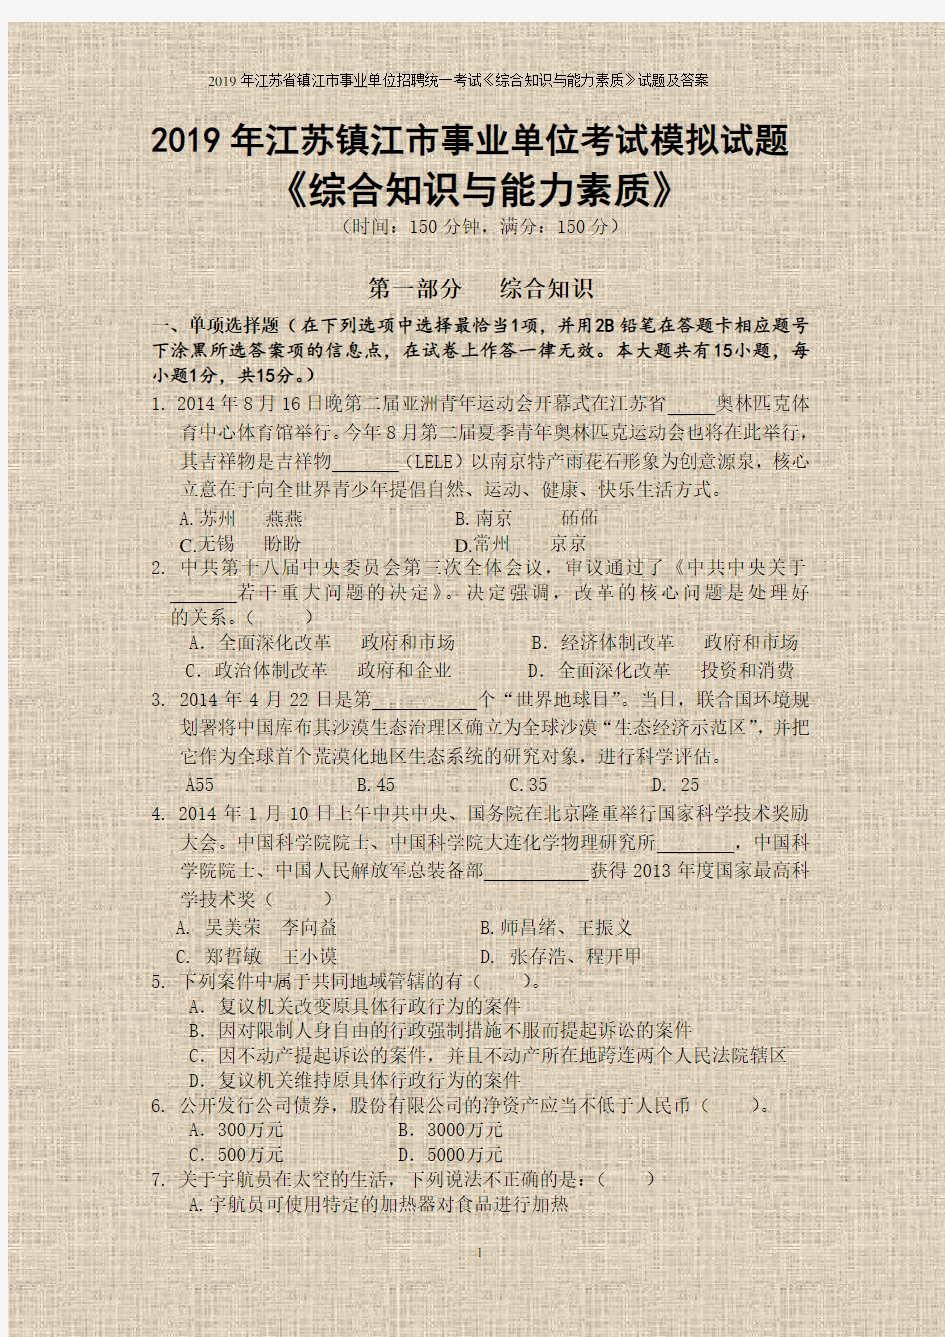 2019年江苏省镇江市事业单位招聘统一考试《综合知识与能力素质》试题及答案